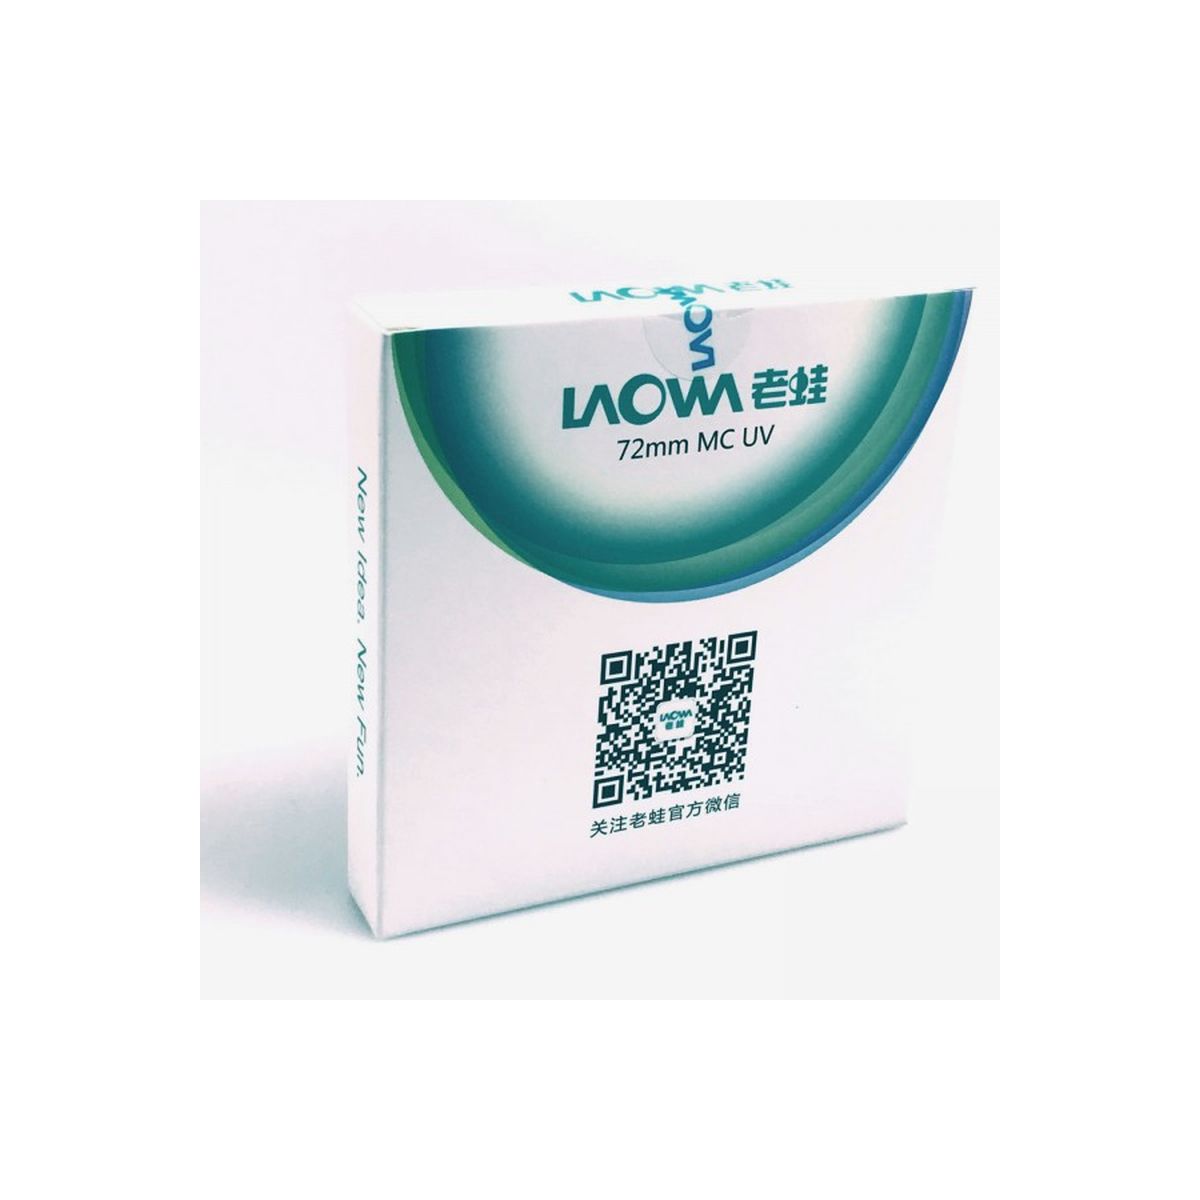 Laowa MC UV Filter slim 72mm